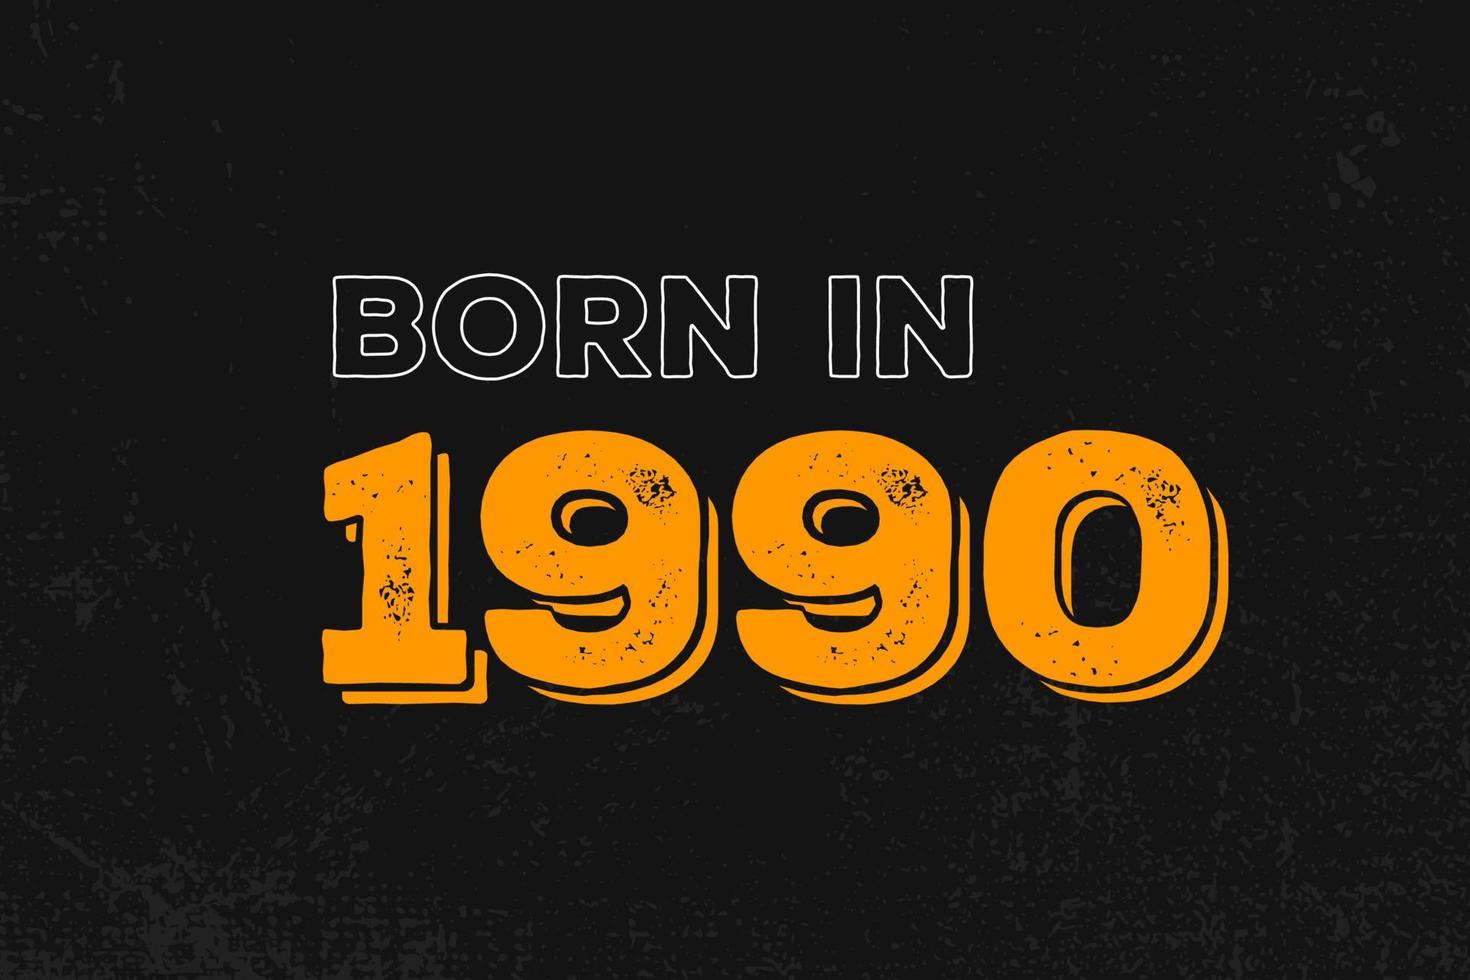 Geboren im Jahr 1990 Geburtstagszitat Design für die im Jahr 1990 Geborenen vektor